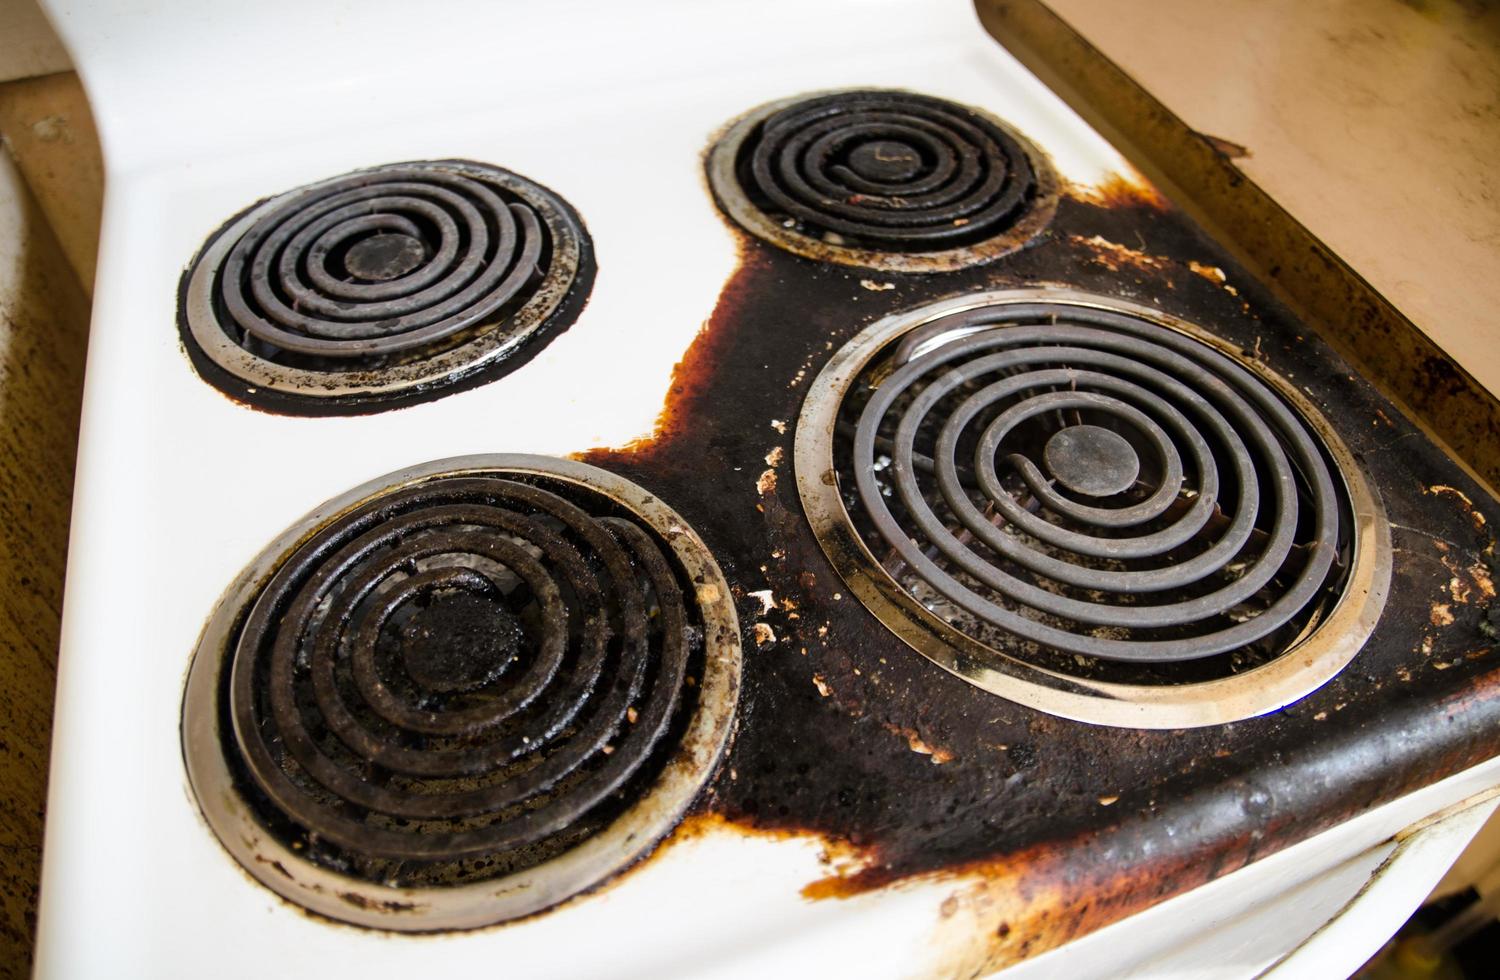 el elemento calefactor se quemó en la estufa de la vieja cocina. foto